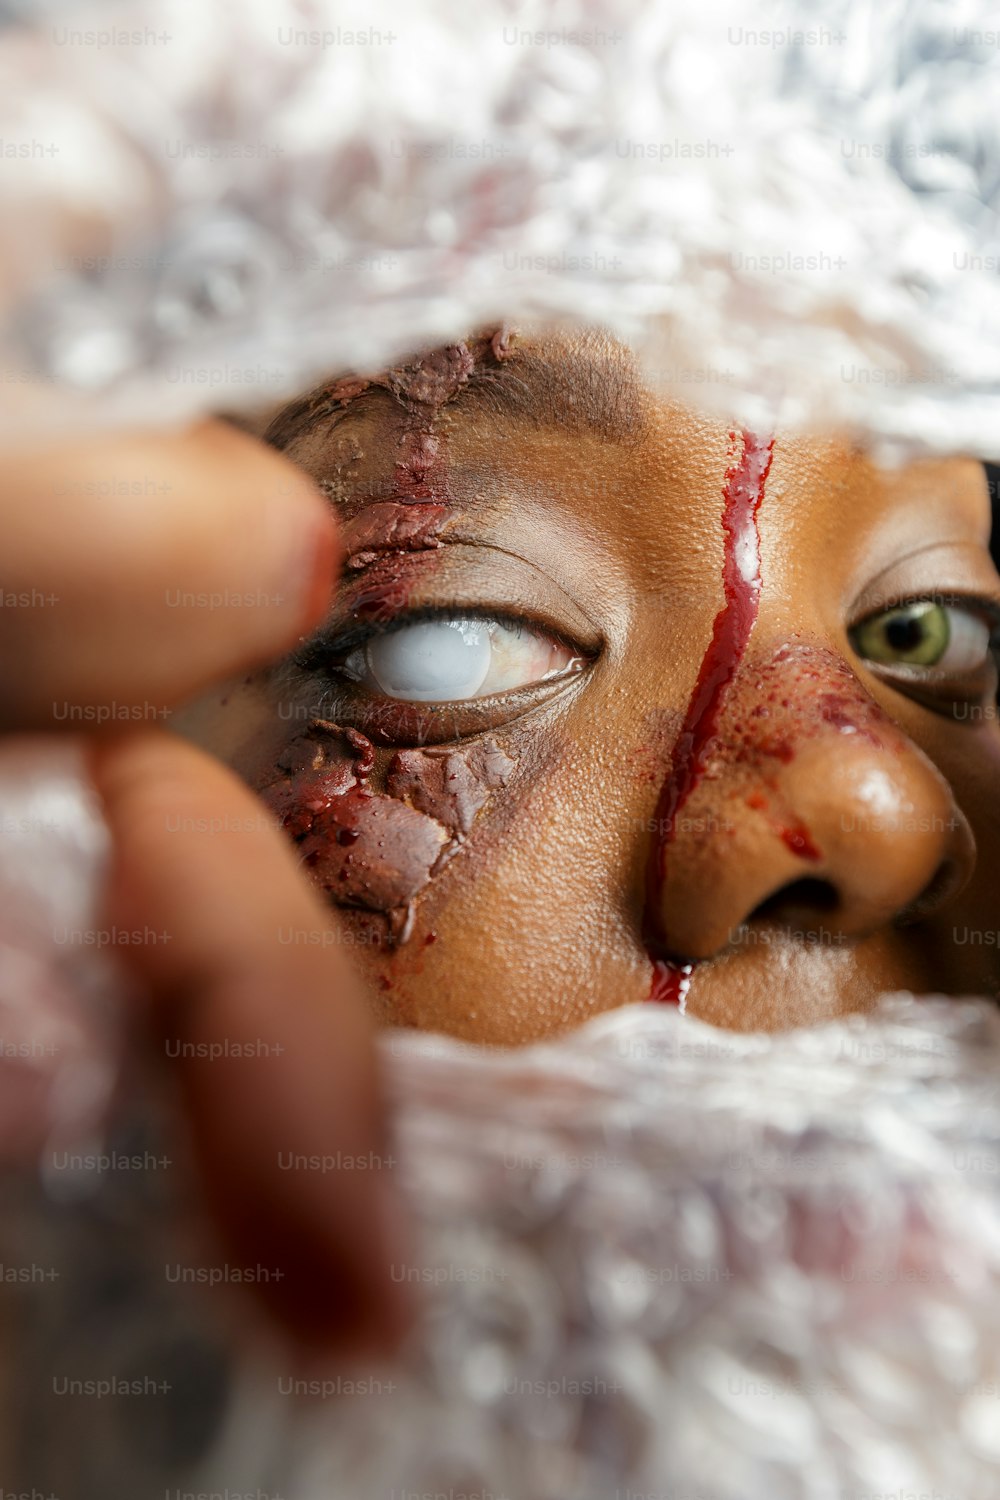 um close up de uma pessoa com sangue no rosto